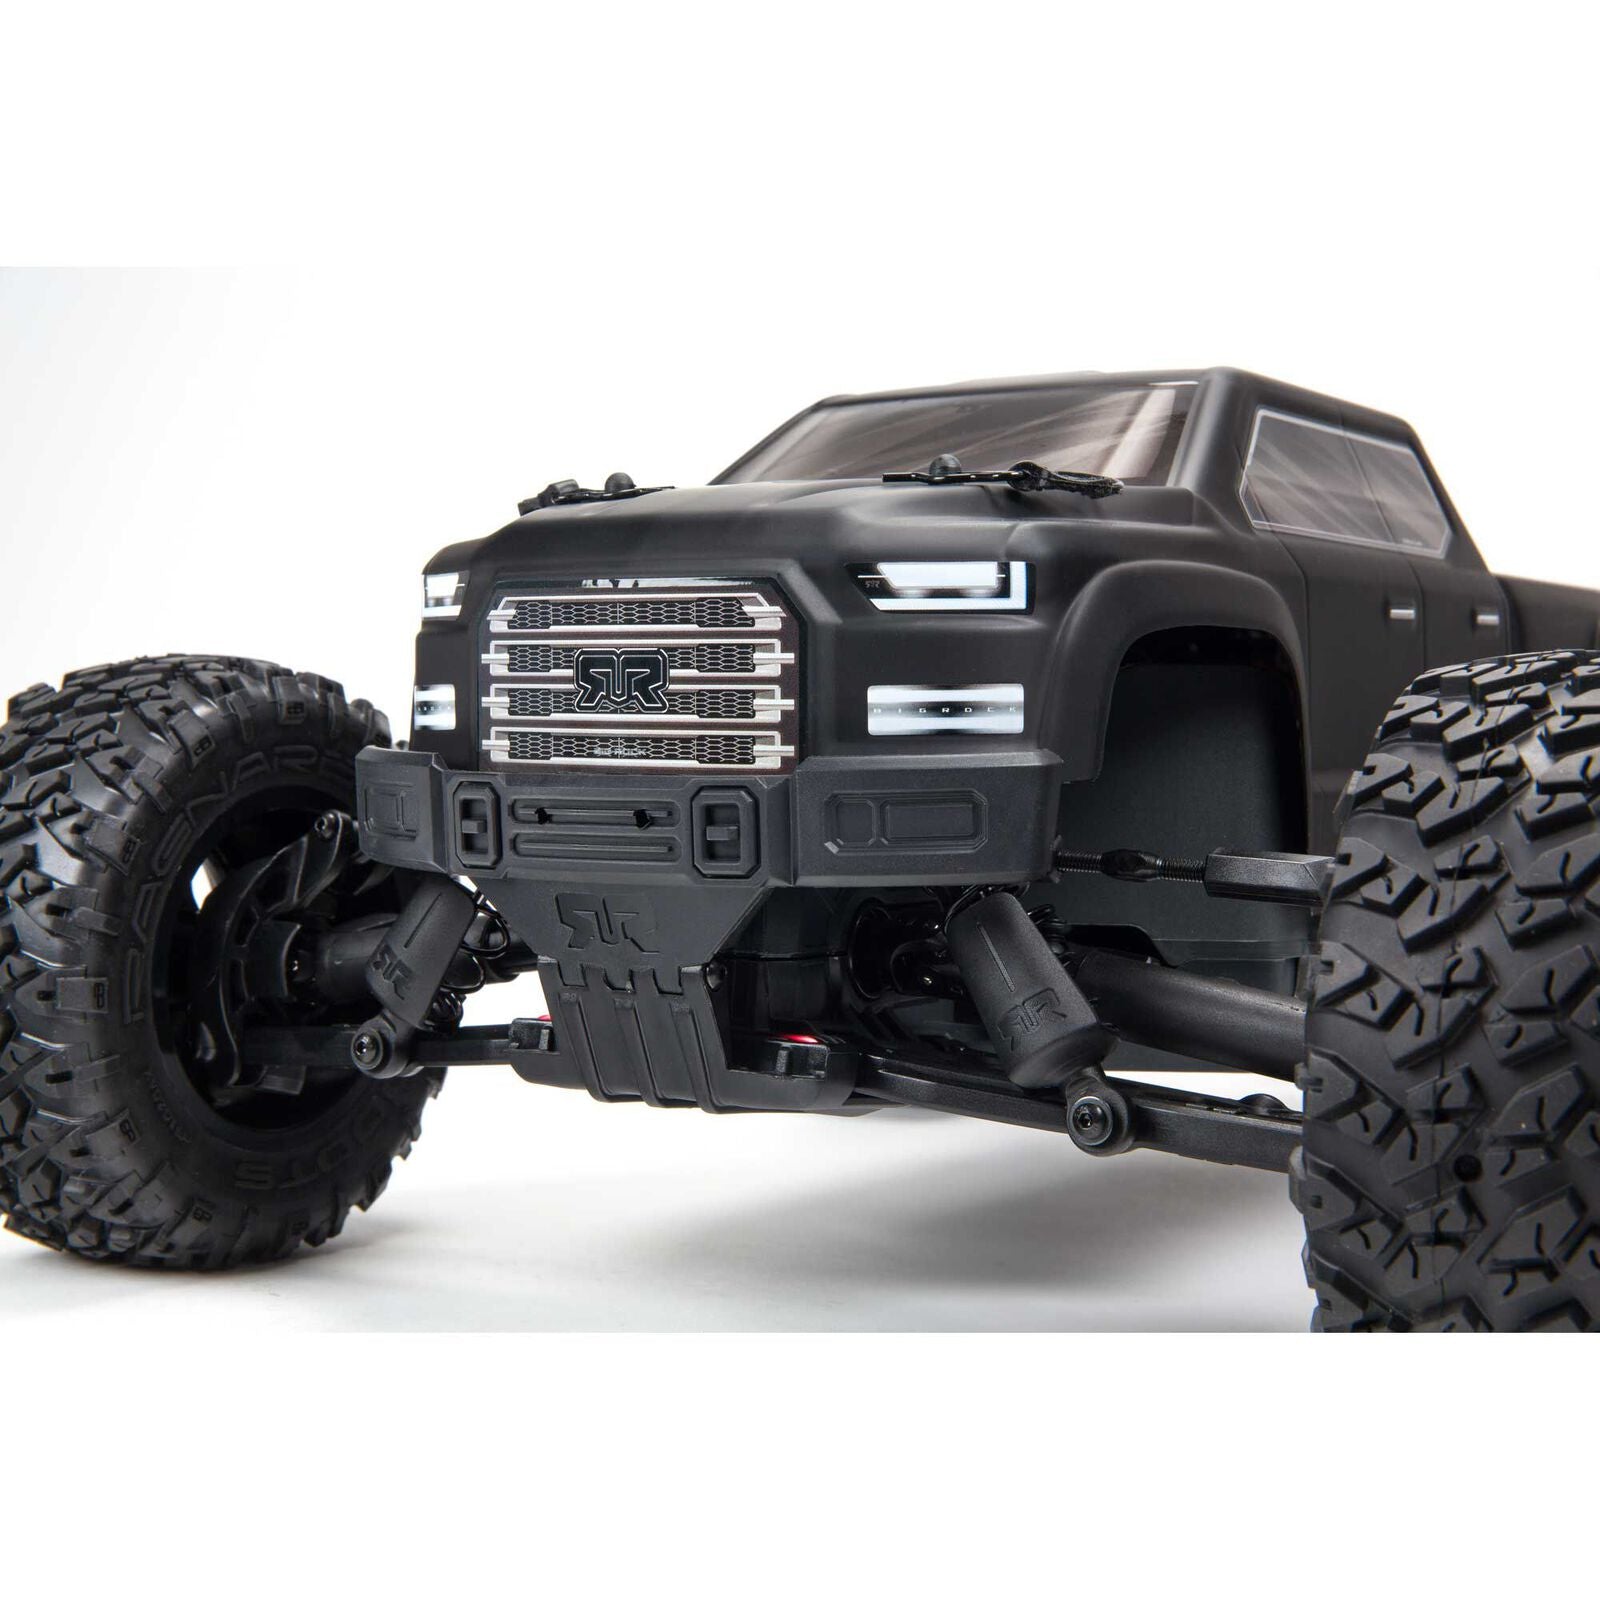 Big Rock 4X4 V3 3S BLX 1/10 RTR Brushless Monster Truck (Black)